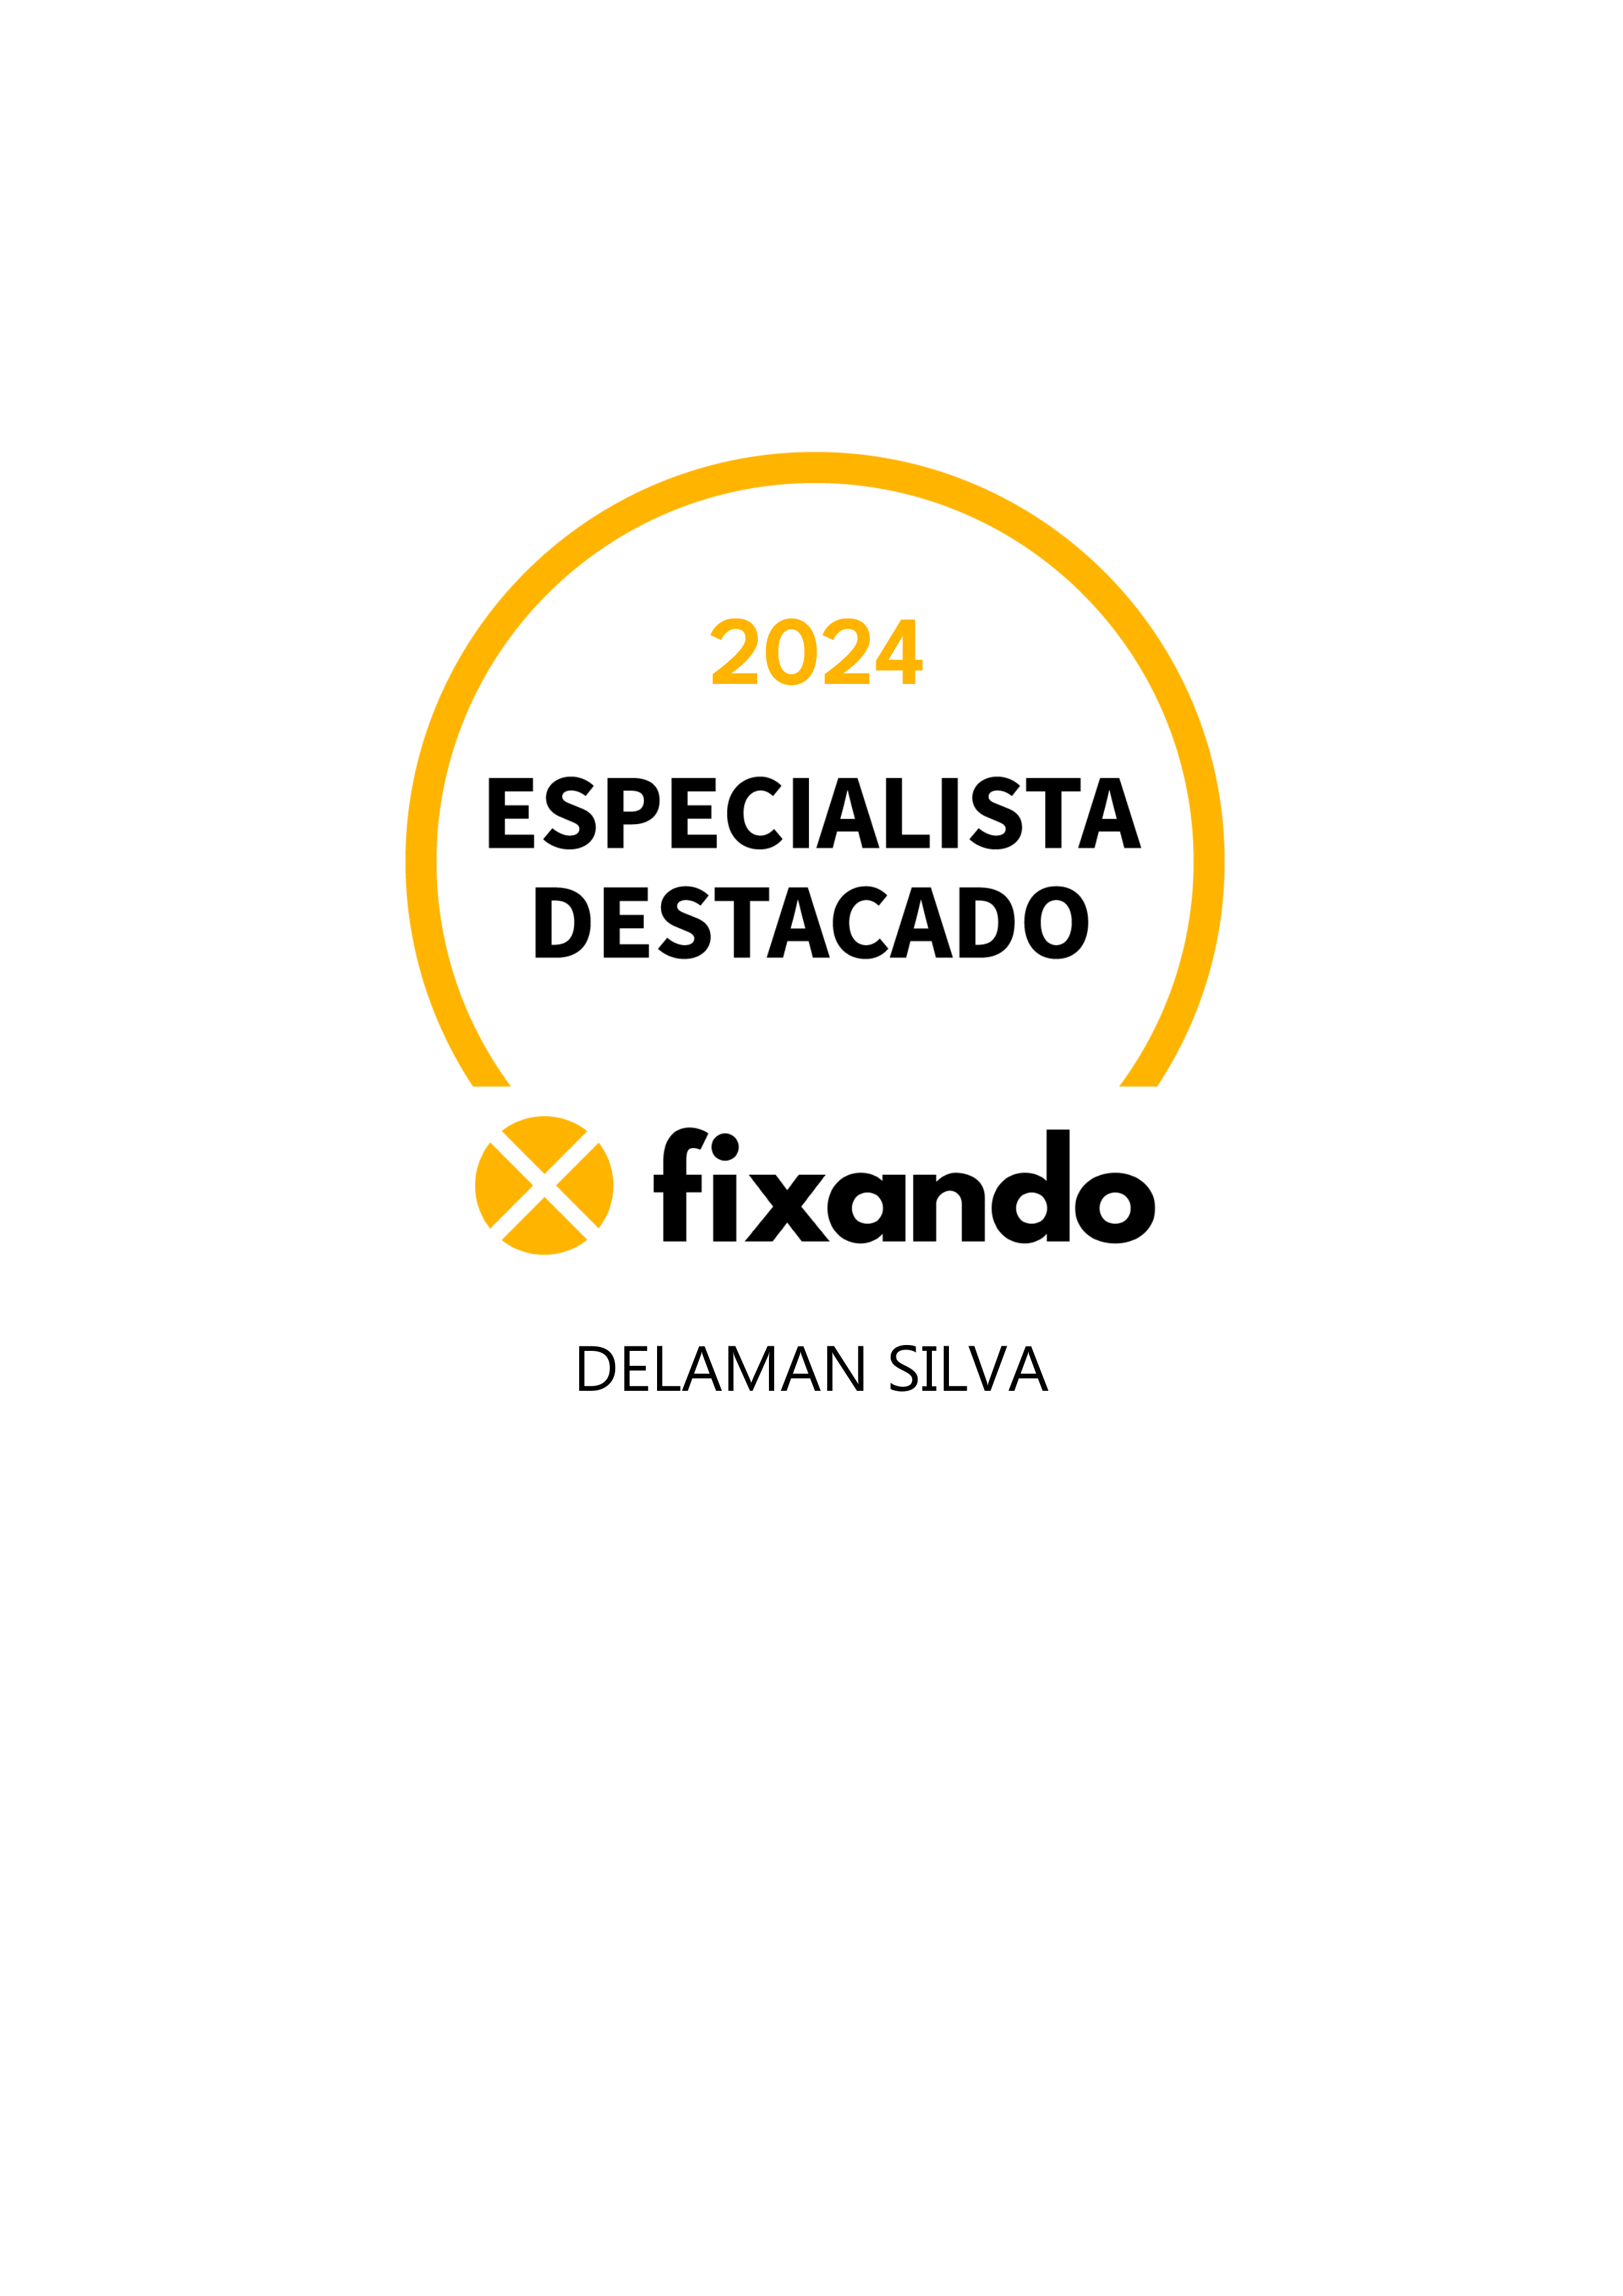 Delaman Silva - Sintra - Desenvolvimento de Aplicações iOS